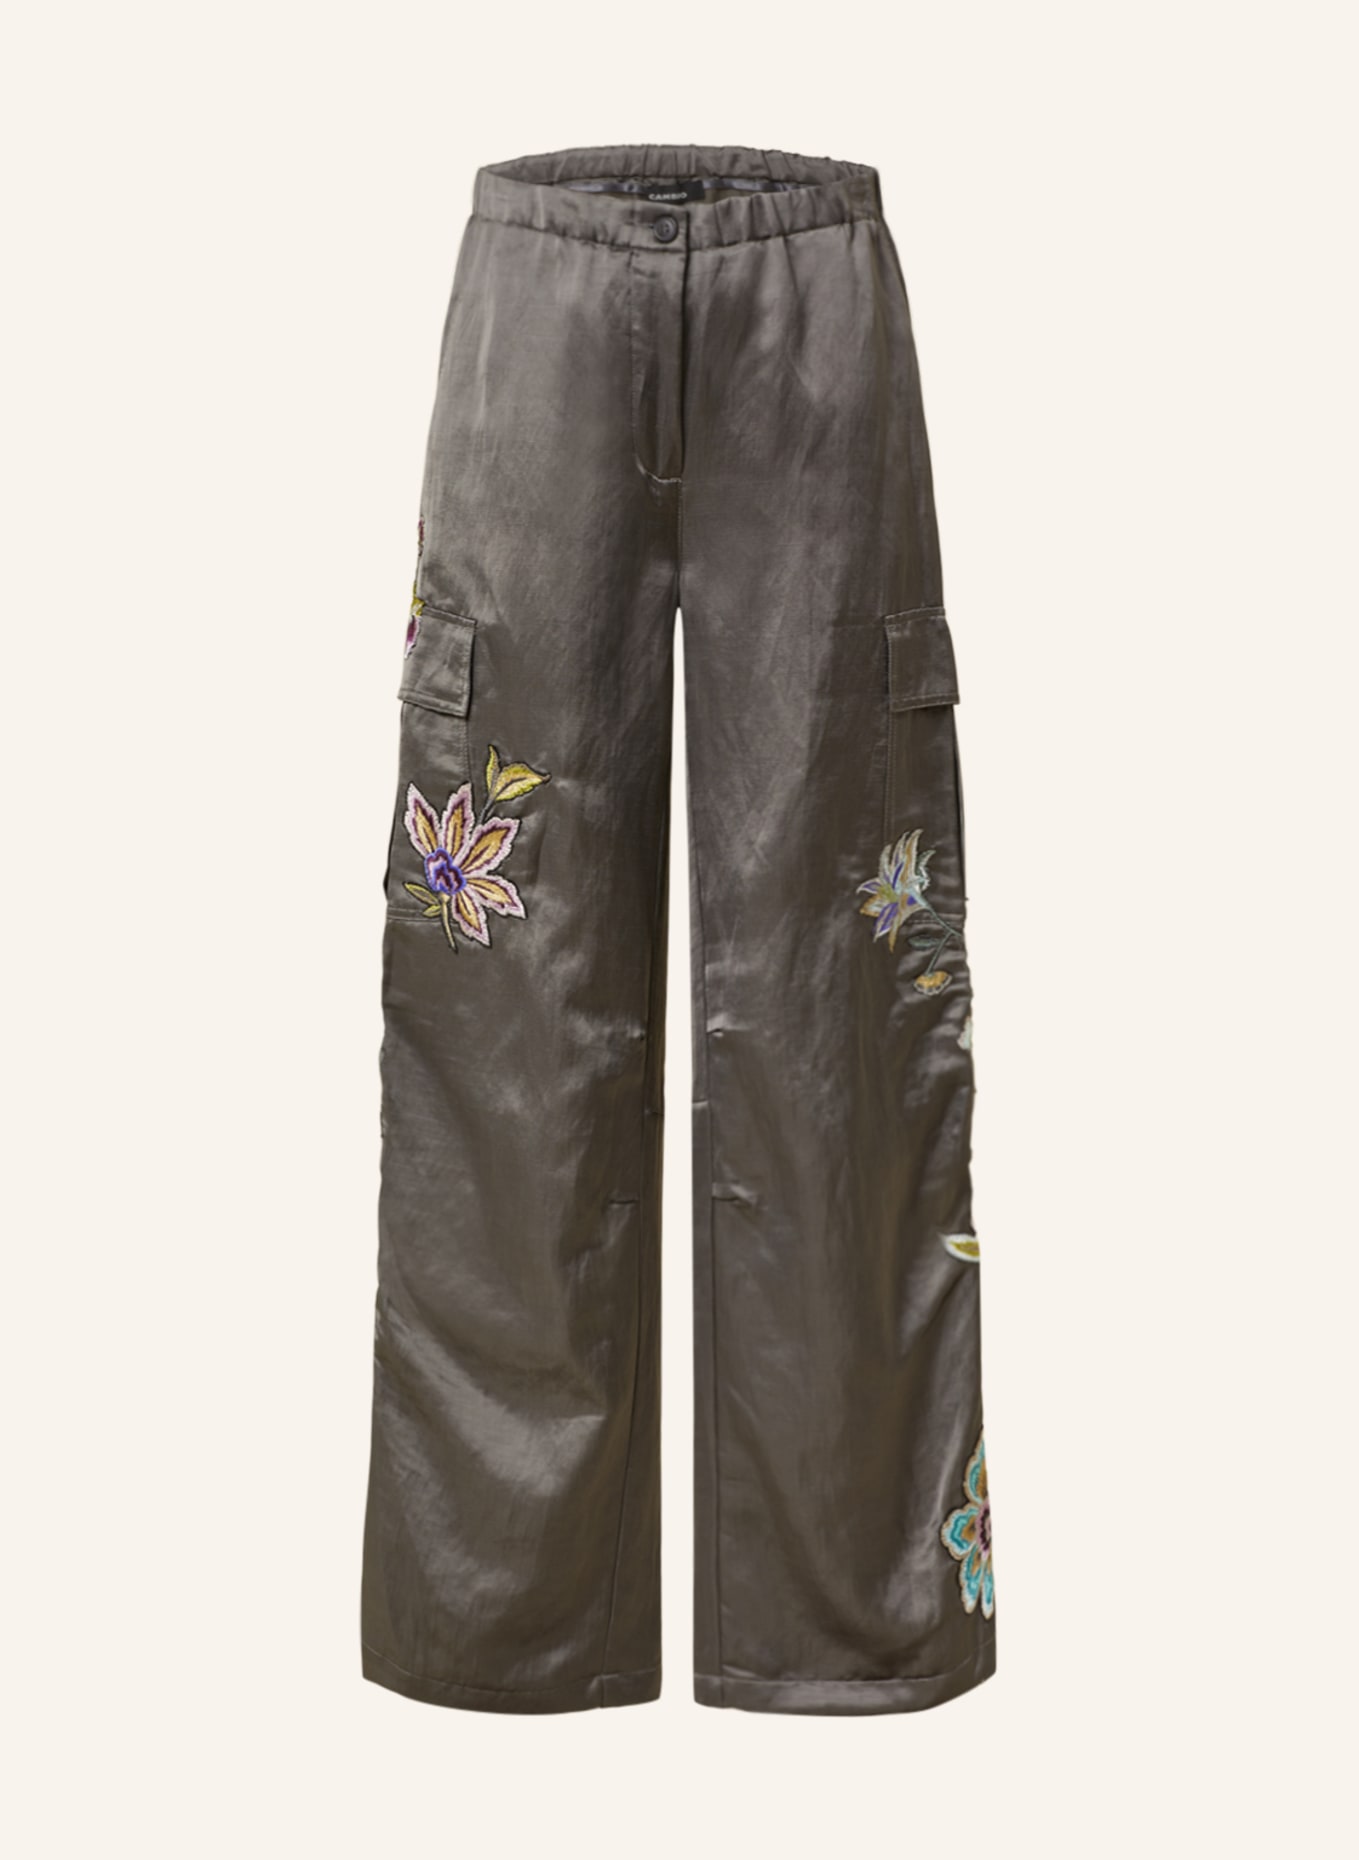 CAMBIO Cargo pants MORGAN with linen, Color: DARK GRAY (Image 1)